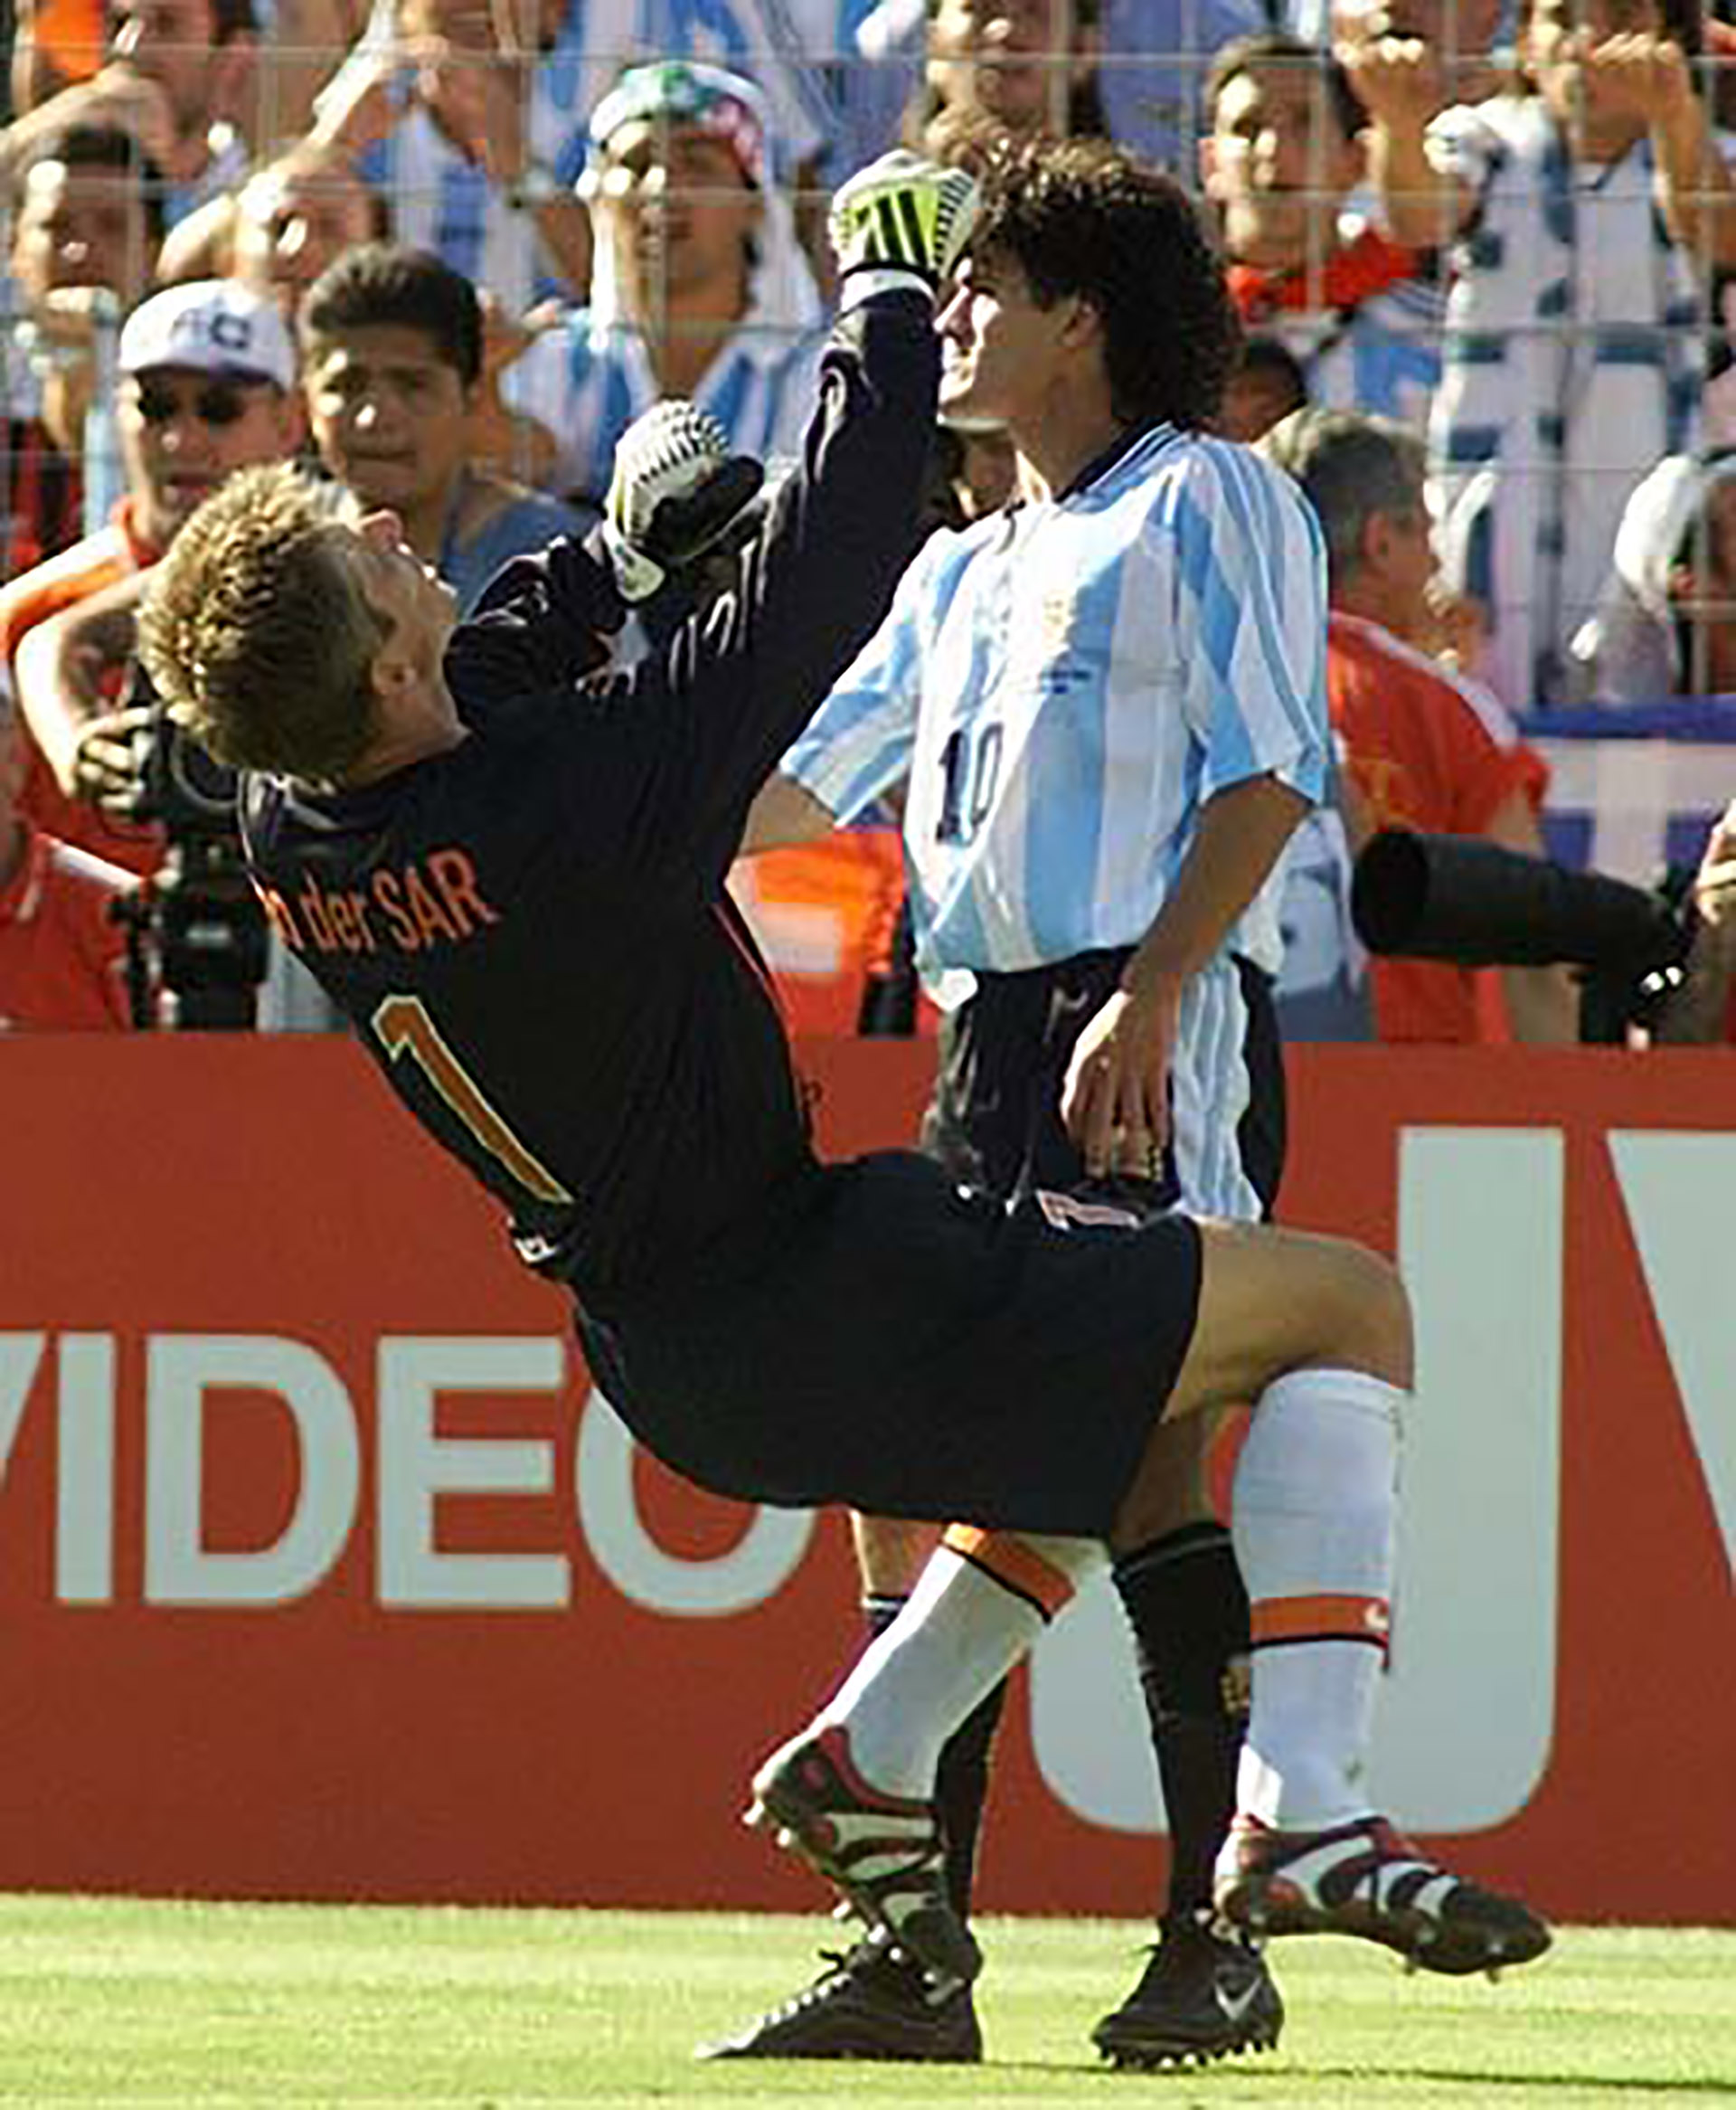 El cabezazo de Ortega a Van der Saar antes de la eliminación de Argentina frente a Holanda (AP)